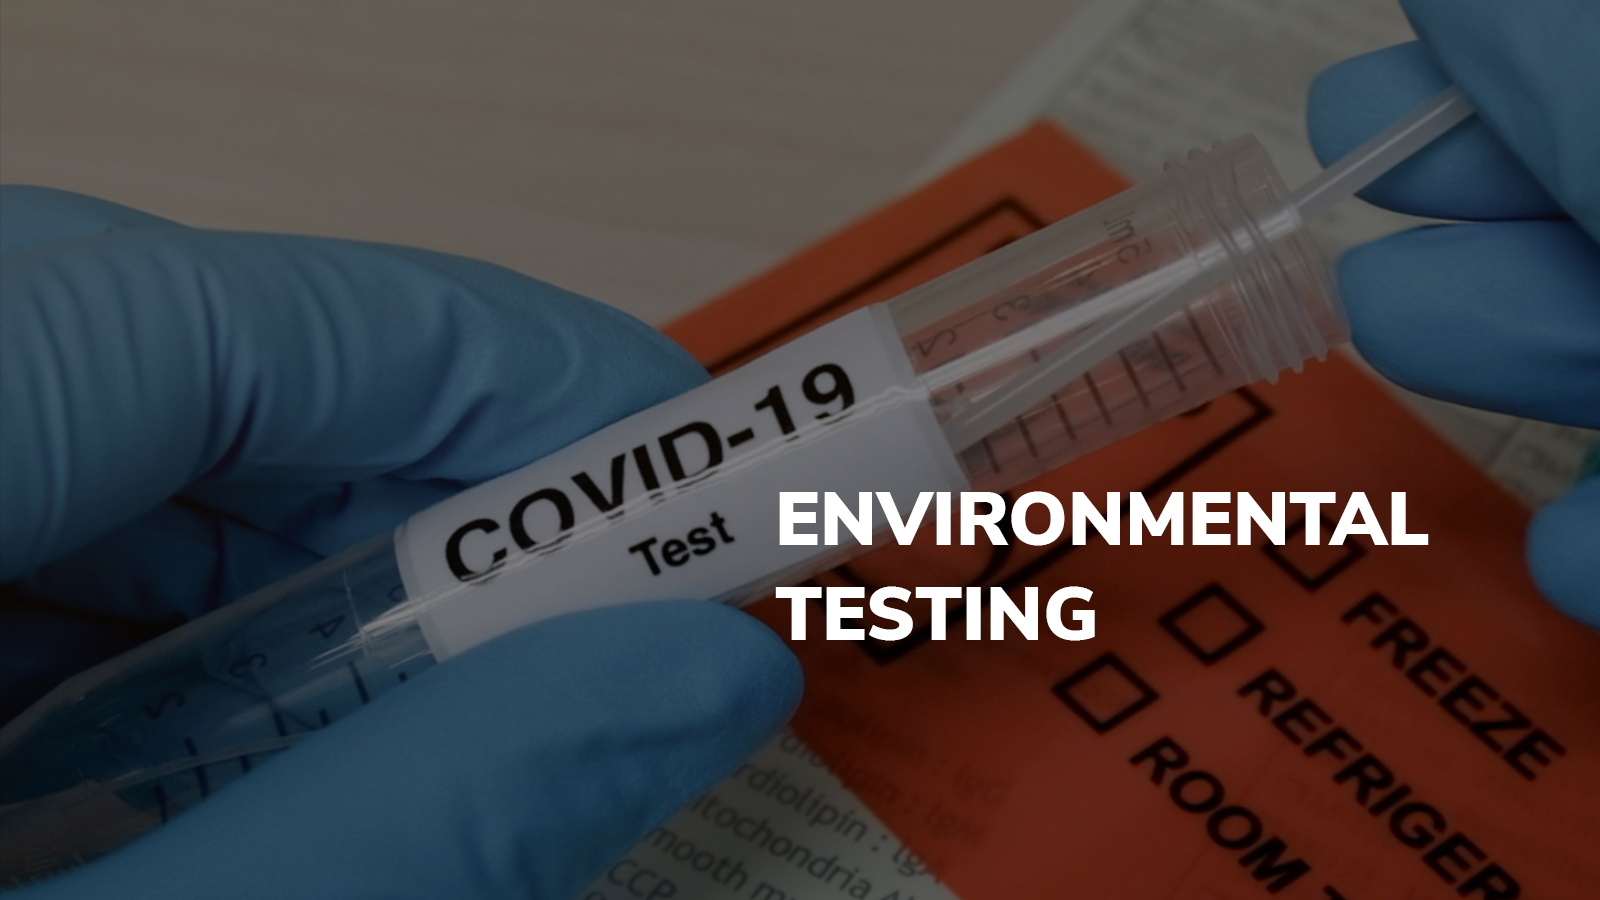 Covid-19 Environmental Testing